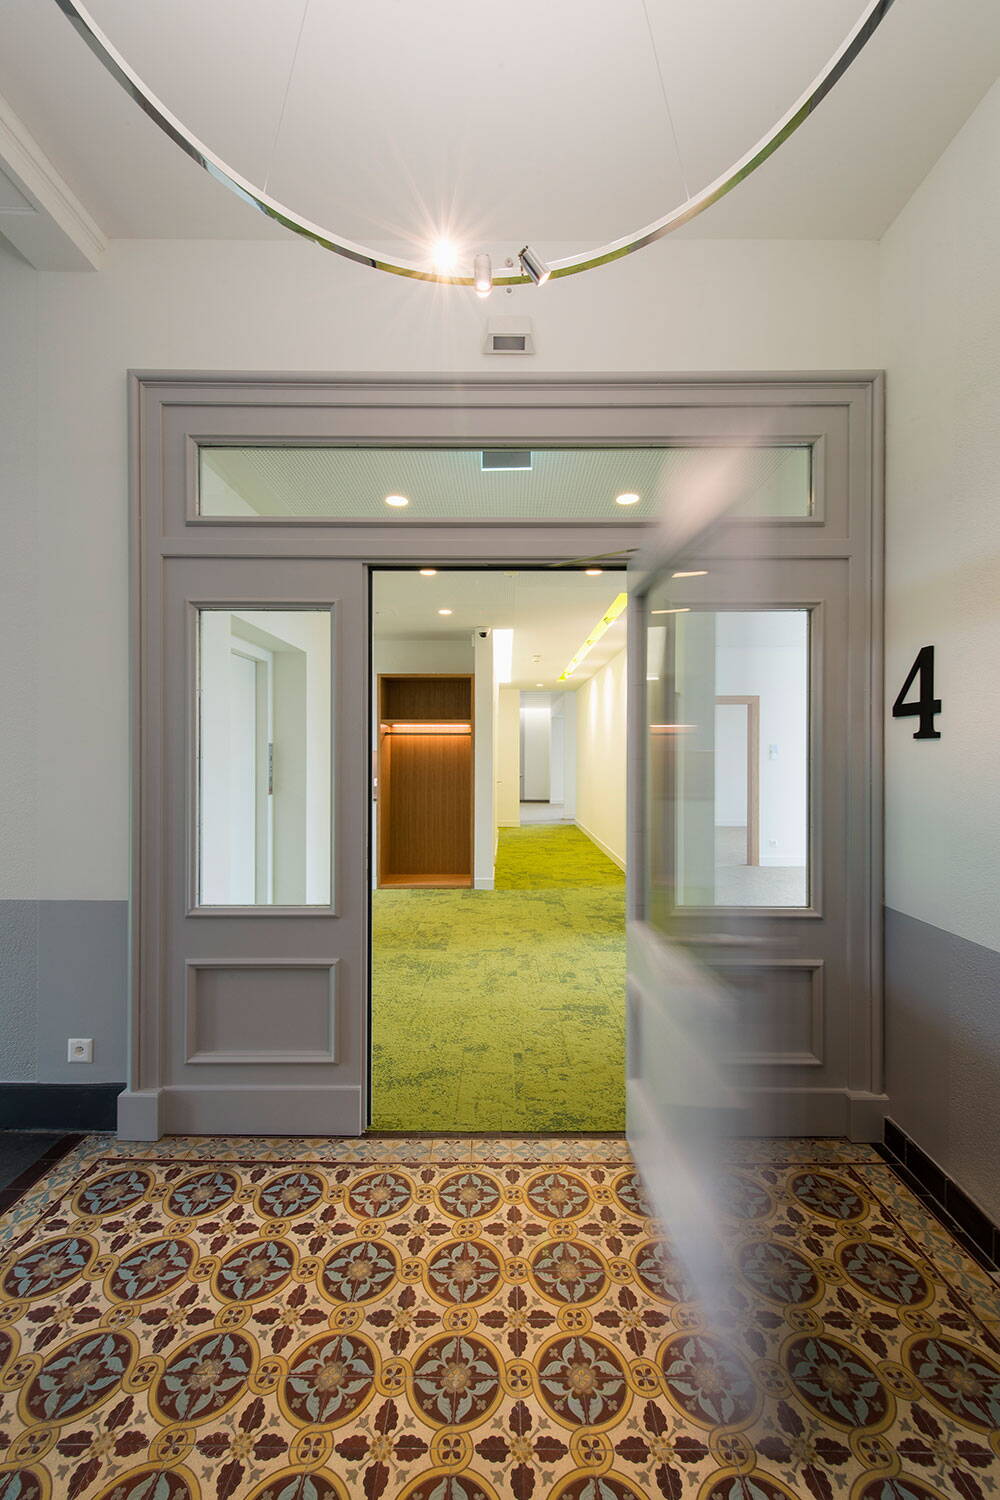 Sicht aus Treppenhaus einer renovierten Geschäftsliegenschaft durch eine offene Holztüre in einen Büroraum. Kunstvolle Bodenplatten und grüner Teppich.